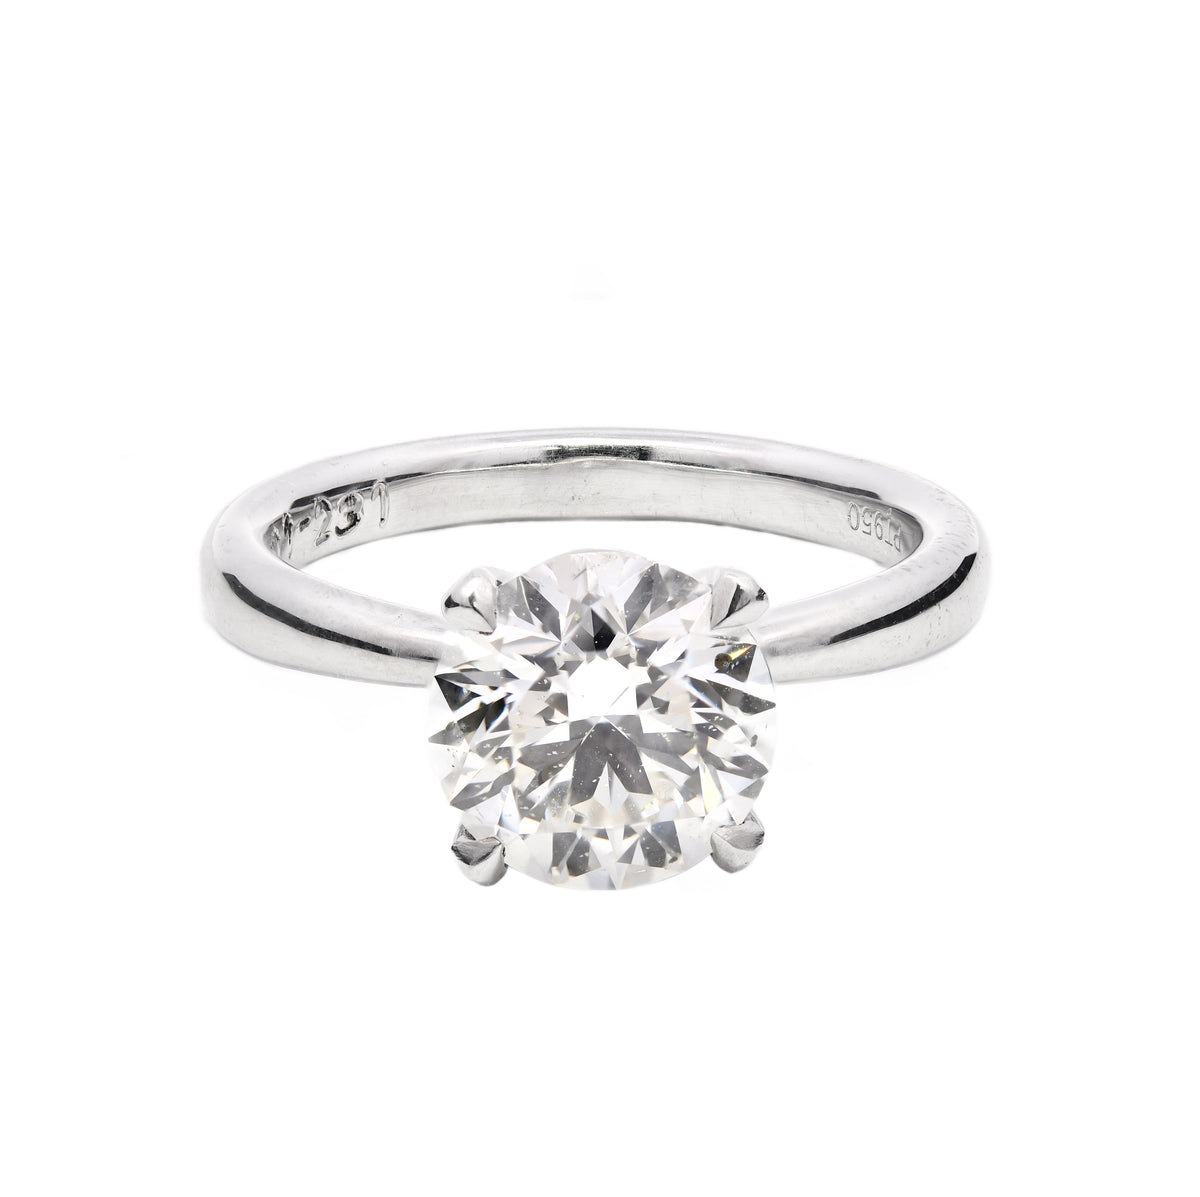 2.00 ct Solitaire Round cut Engagement Ring in Platinum 950 IGI345823583 Certified